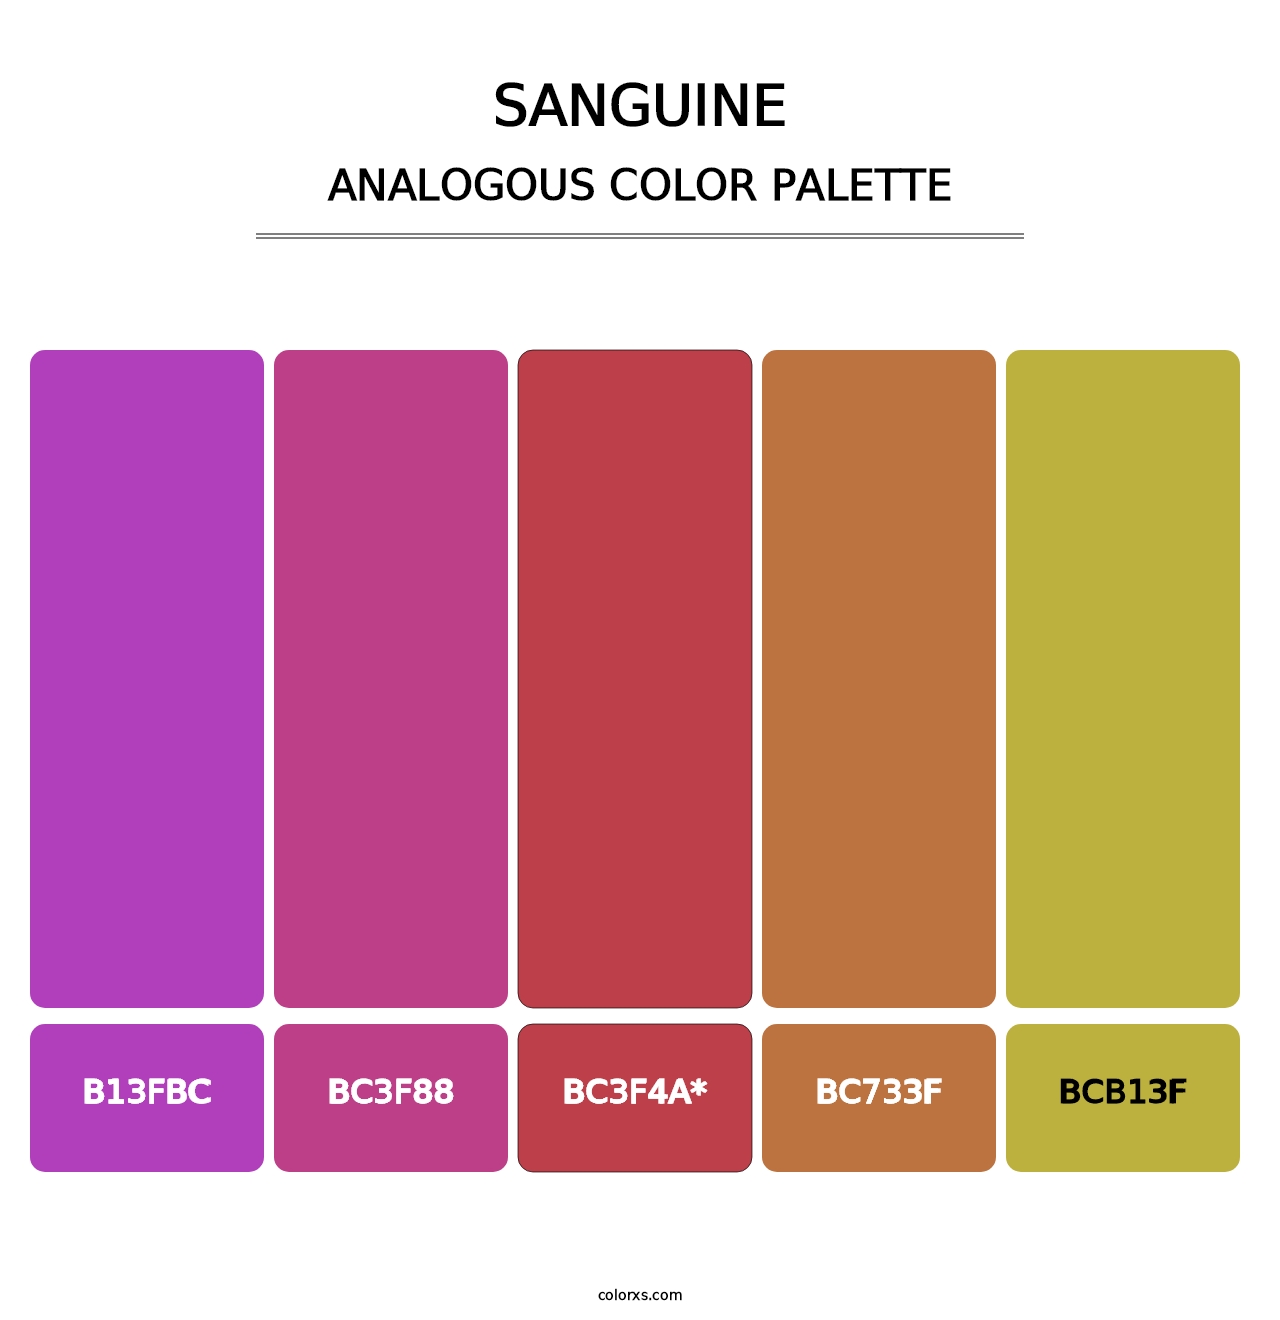 Sanguine - Analogous Color Palette